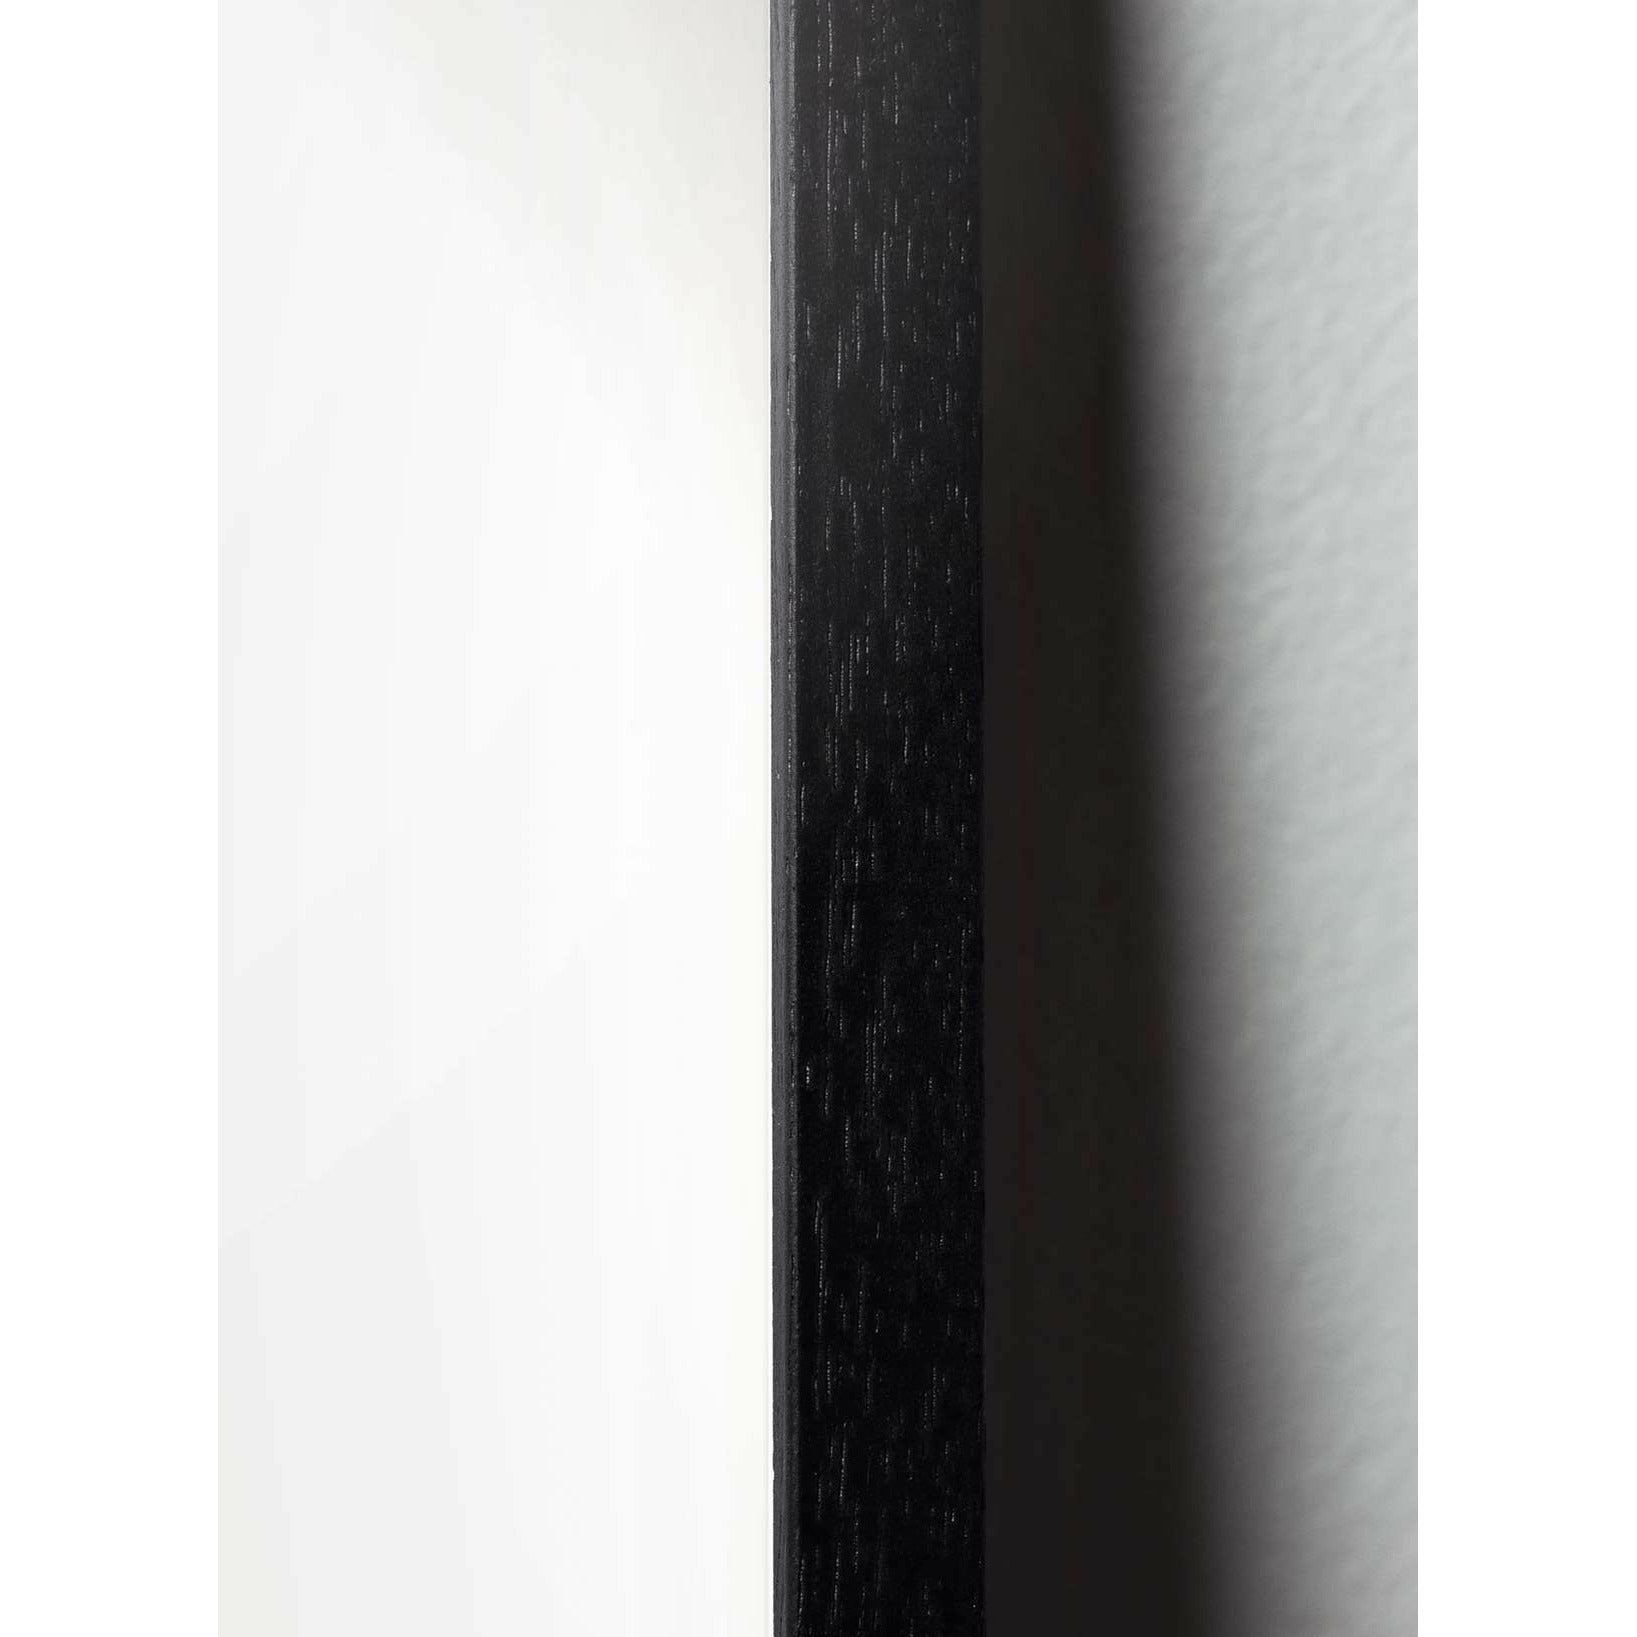 Pomysłowy plakat mrówek, rama w czarnym lakierowanym drewnie 50x70 cm, tło w kolorze piasku